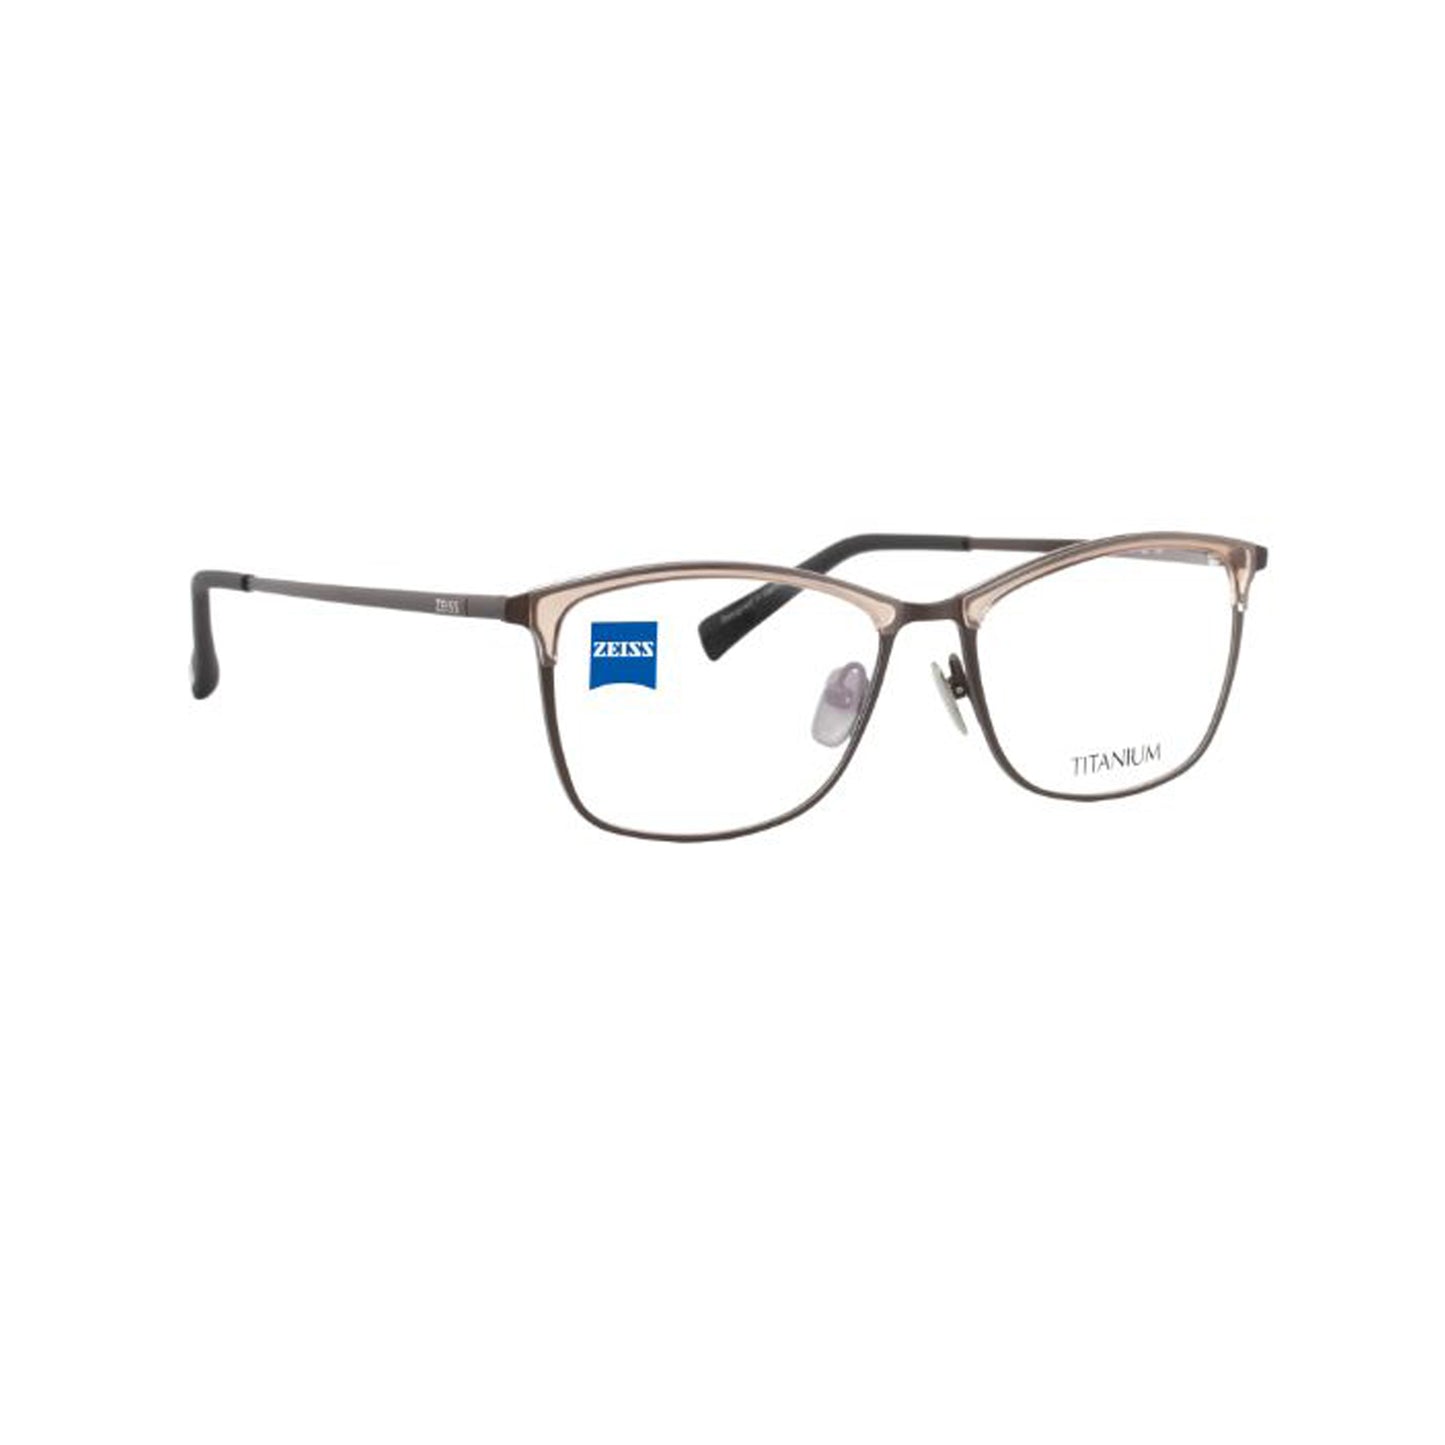 Zeiss Eyewear Brown Cat-Eye Metal Full Rim Eyeglasses. Made in Germany ZS30017-Y22